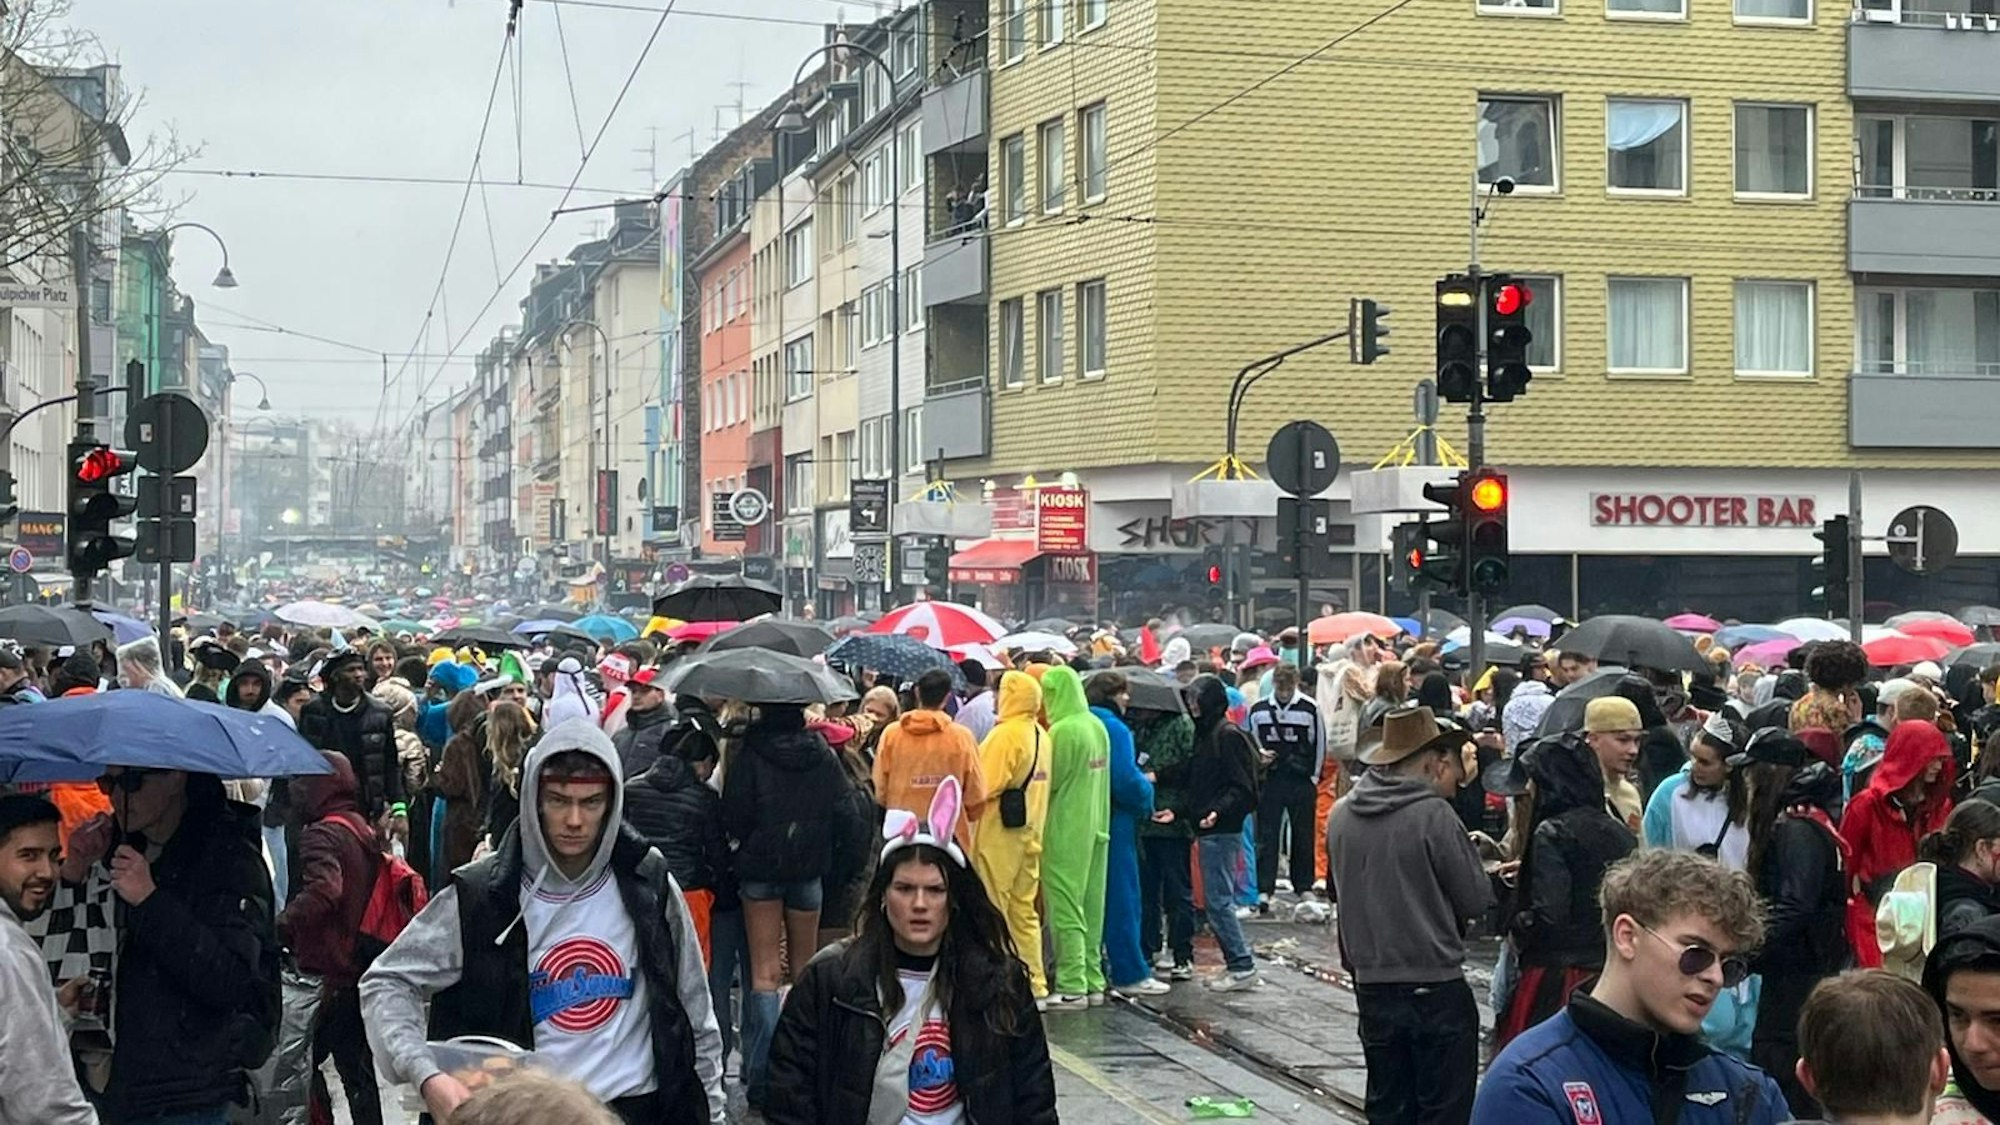 Zülpicher Straße mit vielen Regenschirmen.